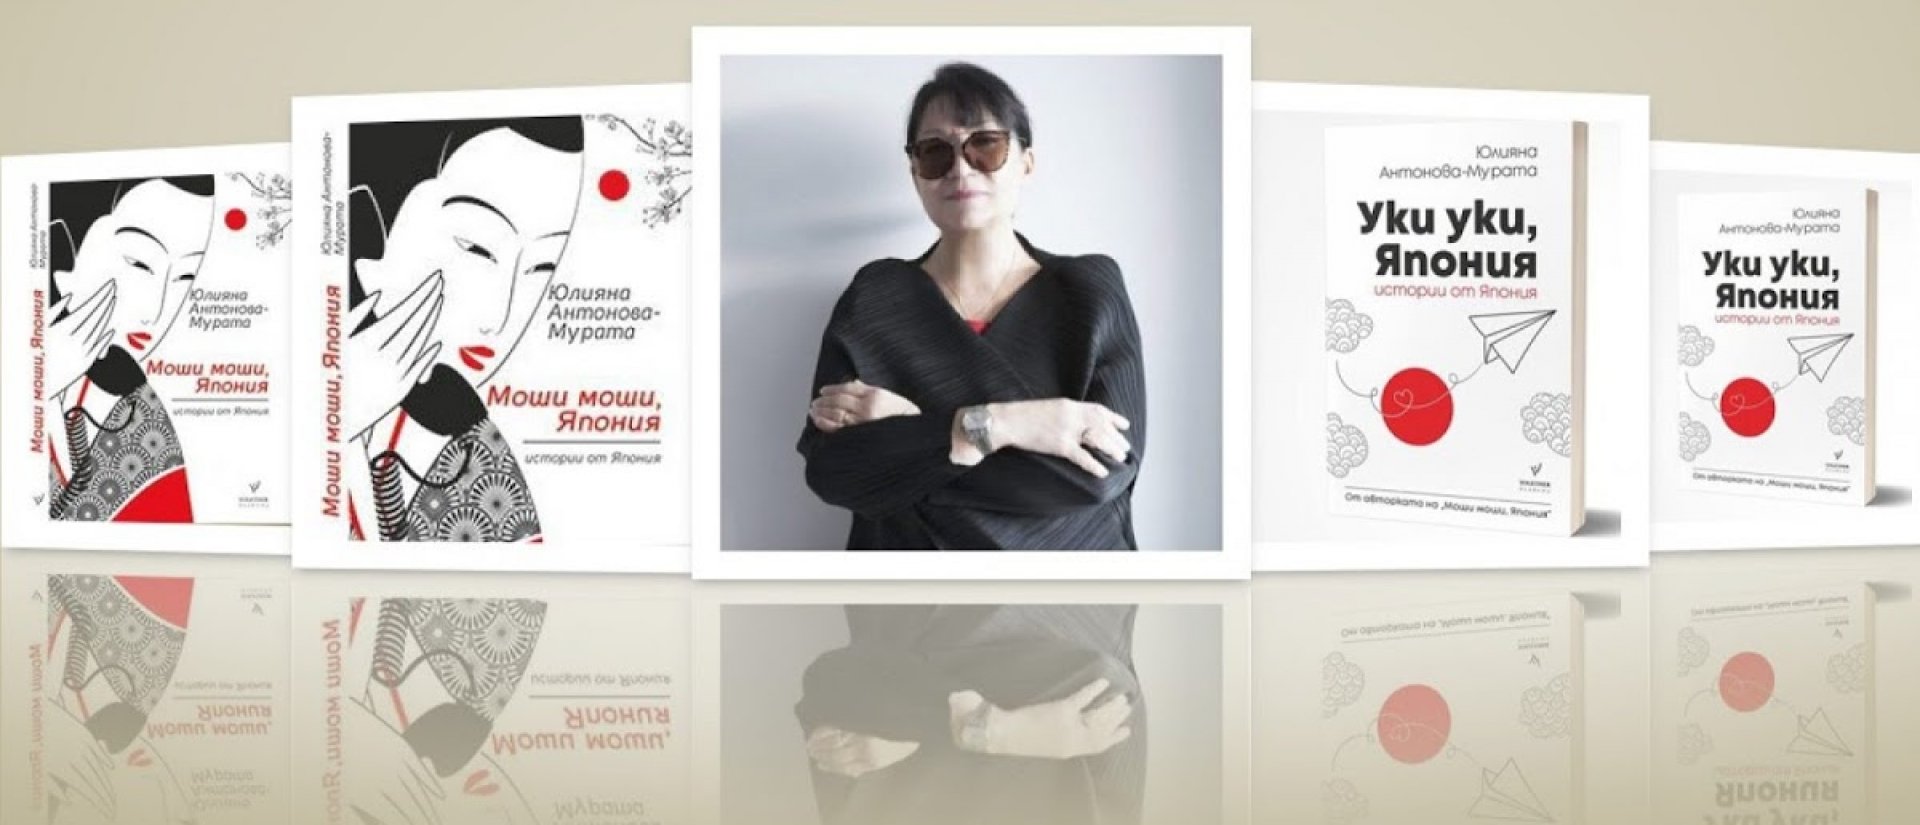 Юлияна Антонова - Мурата представя Япония в Бургас с  книга събрала автентични истории - E-Burgas.com